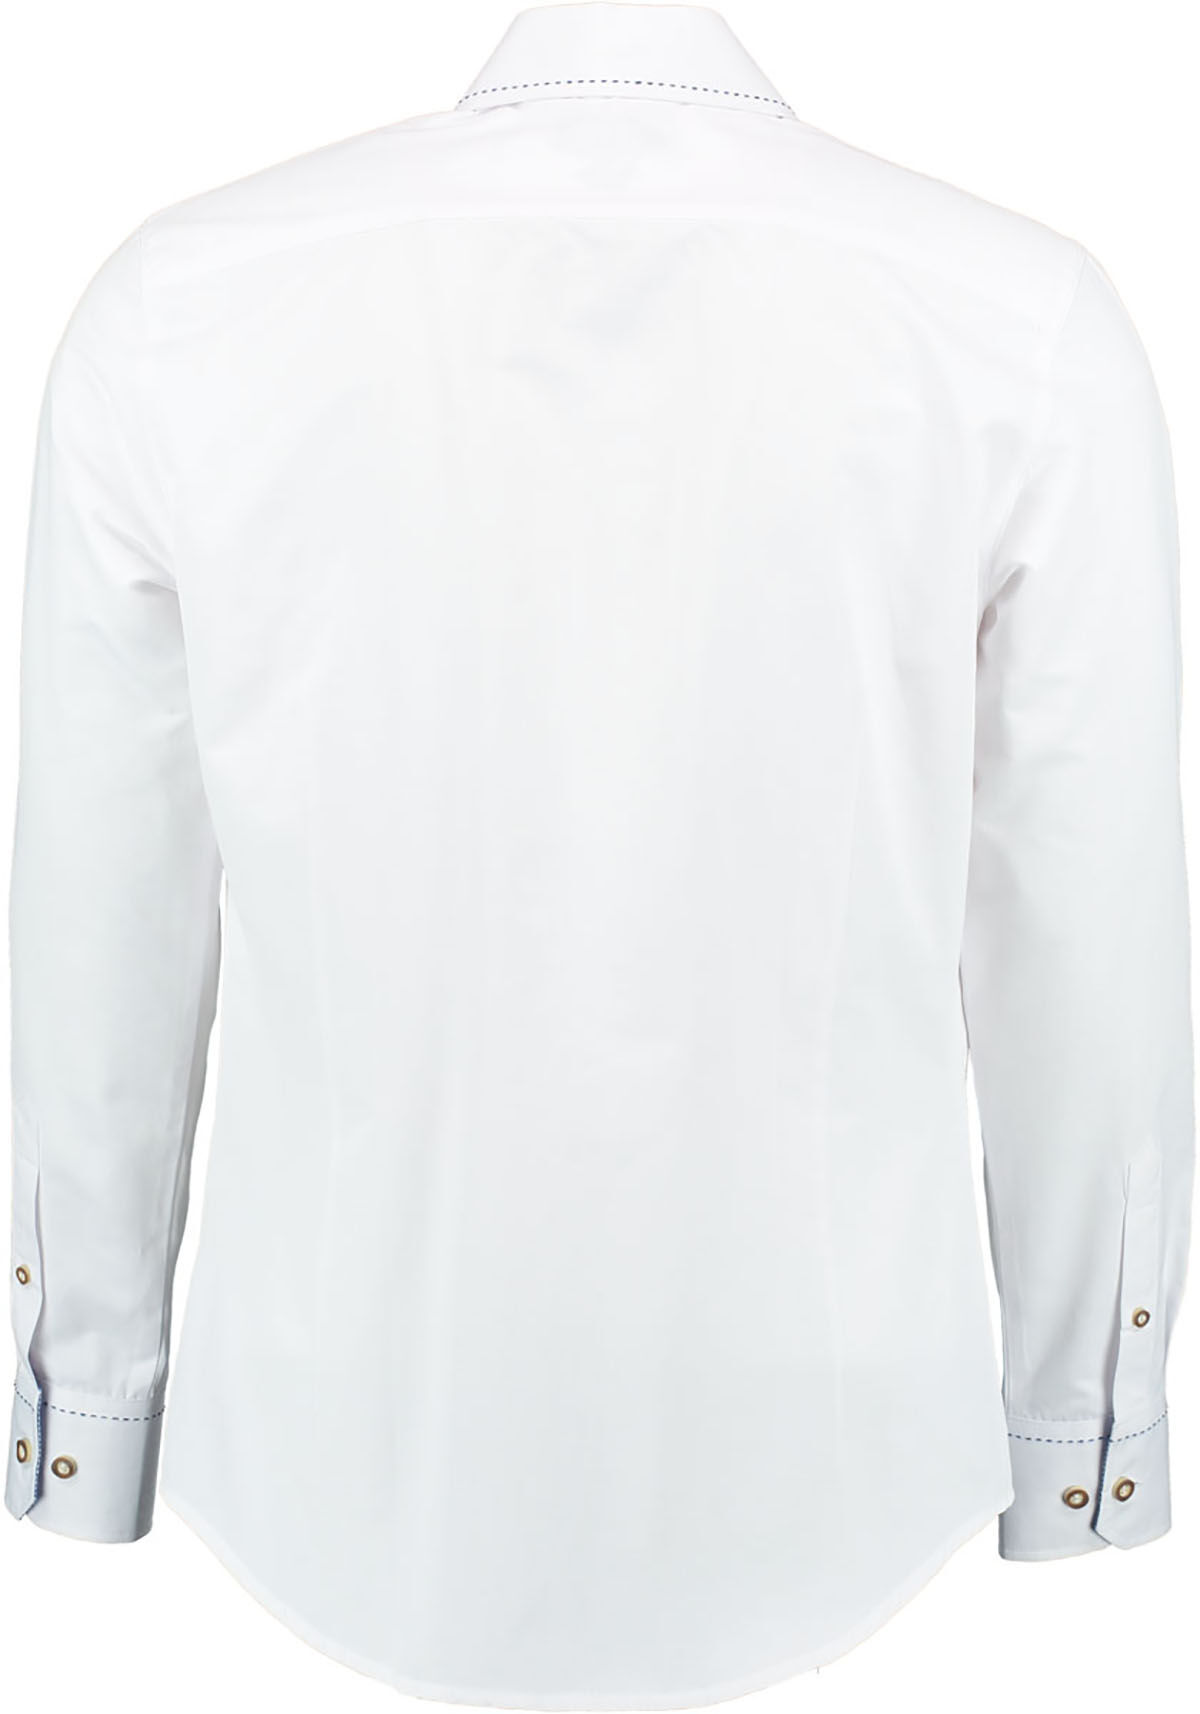 Trachtenhemd Weiß/Blau SLIMFIT mit Karo 